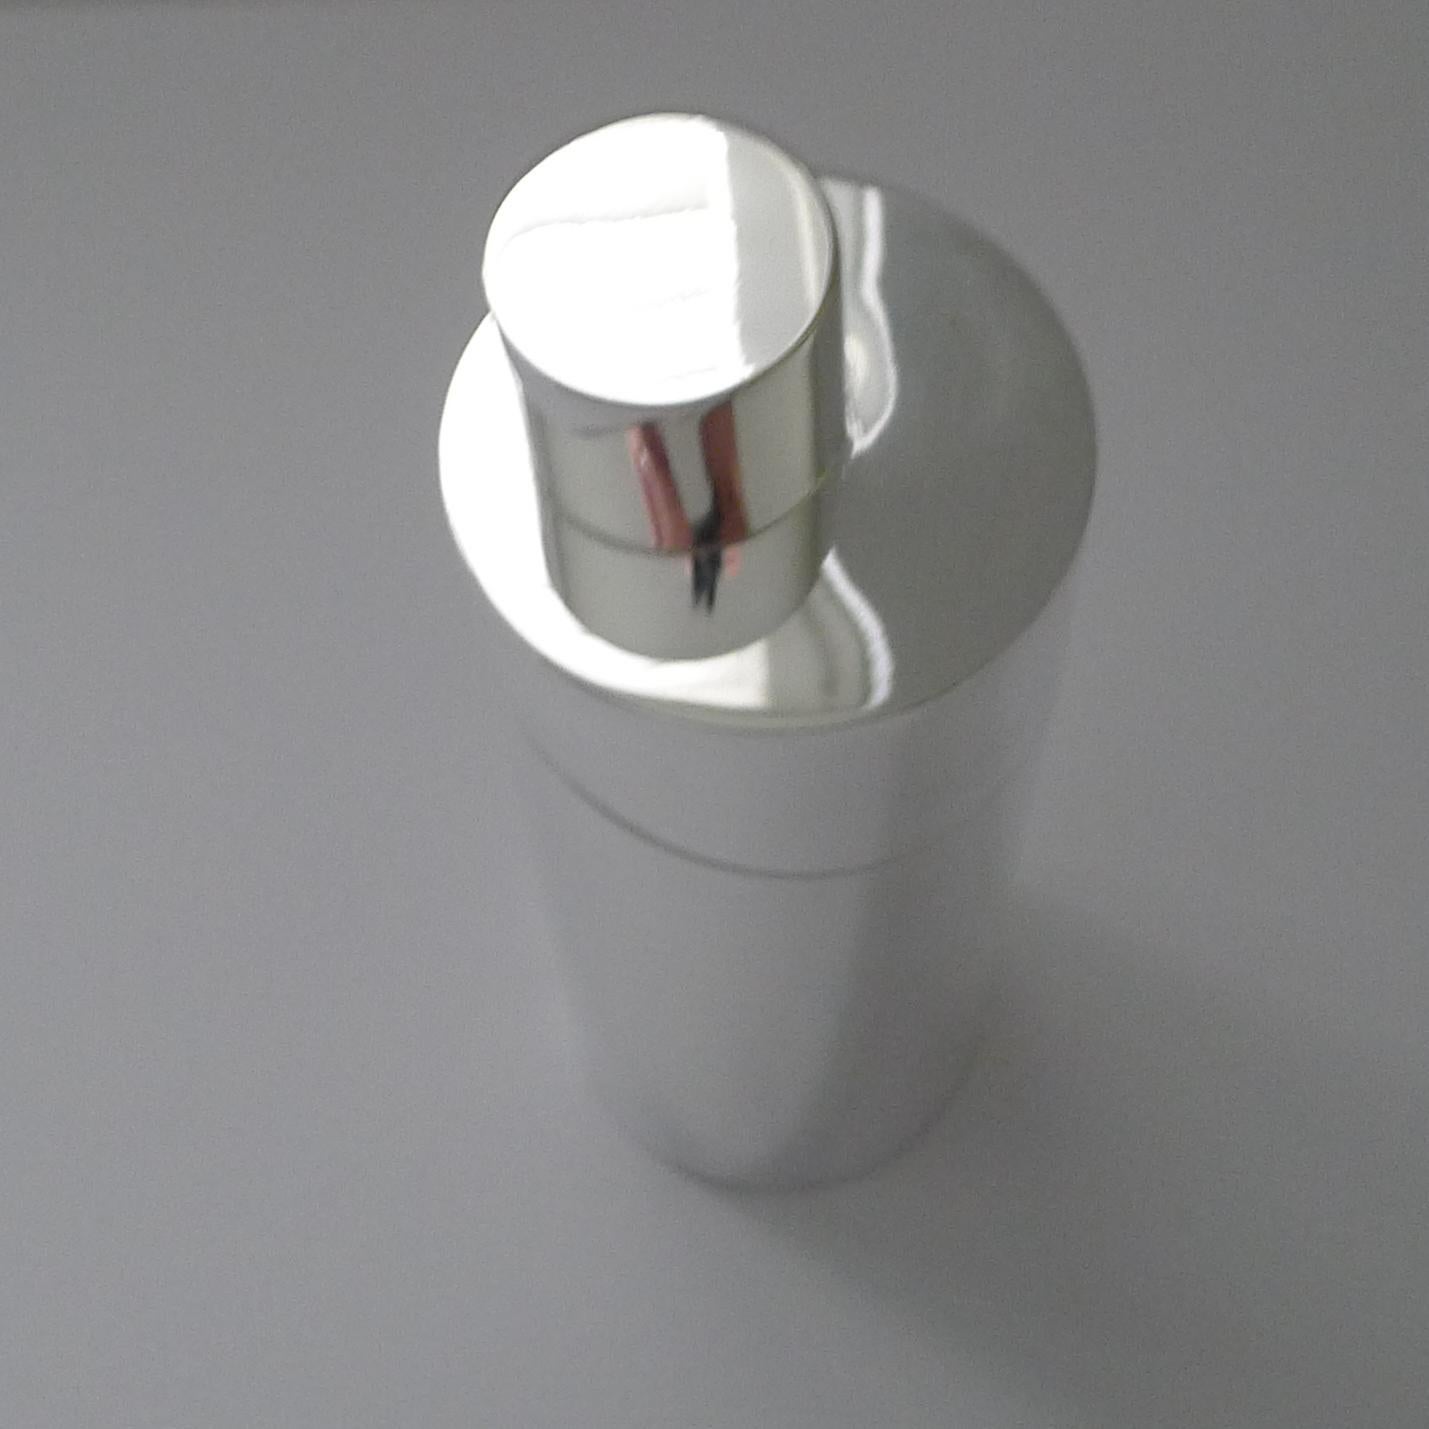 Ein atemberaubender modernistischer Cocktail-Shaker, entworfen von dem weltberühmten Lino Sabattini für die berühmte Orfevrerie Christofle, eine magische Kombination aus Qualität und minimalistischem Design.

Das als Teil der Gallia-Reihe entworfene